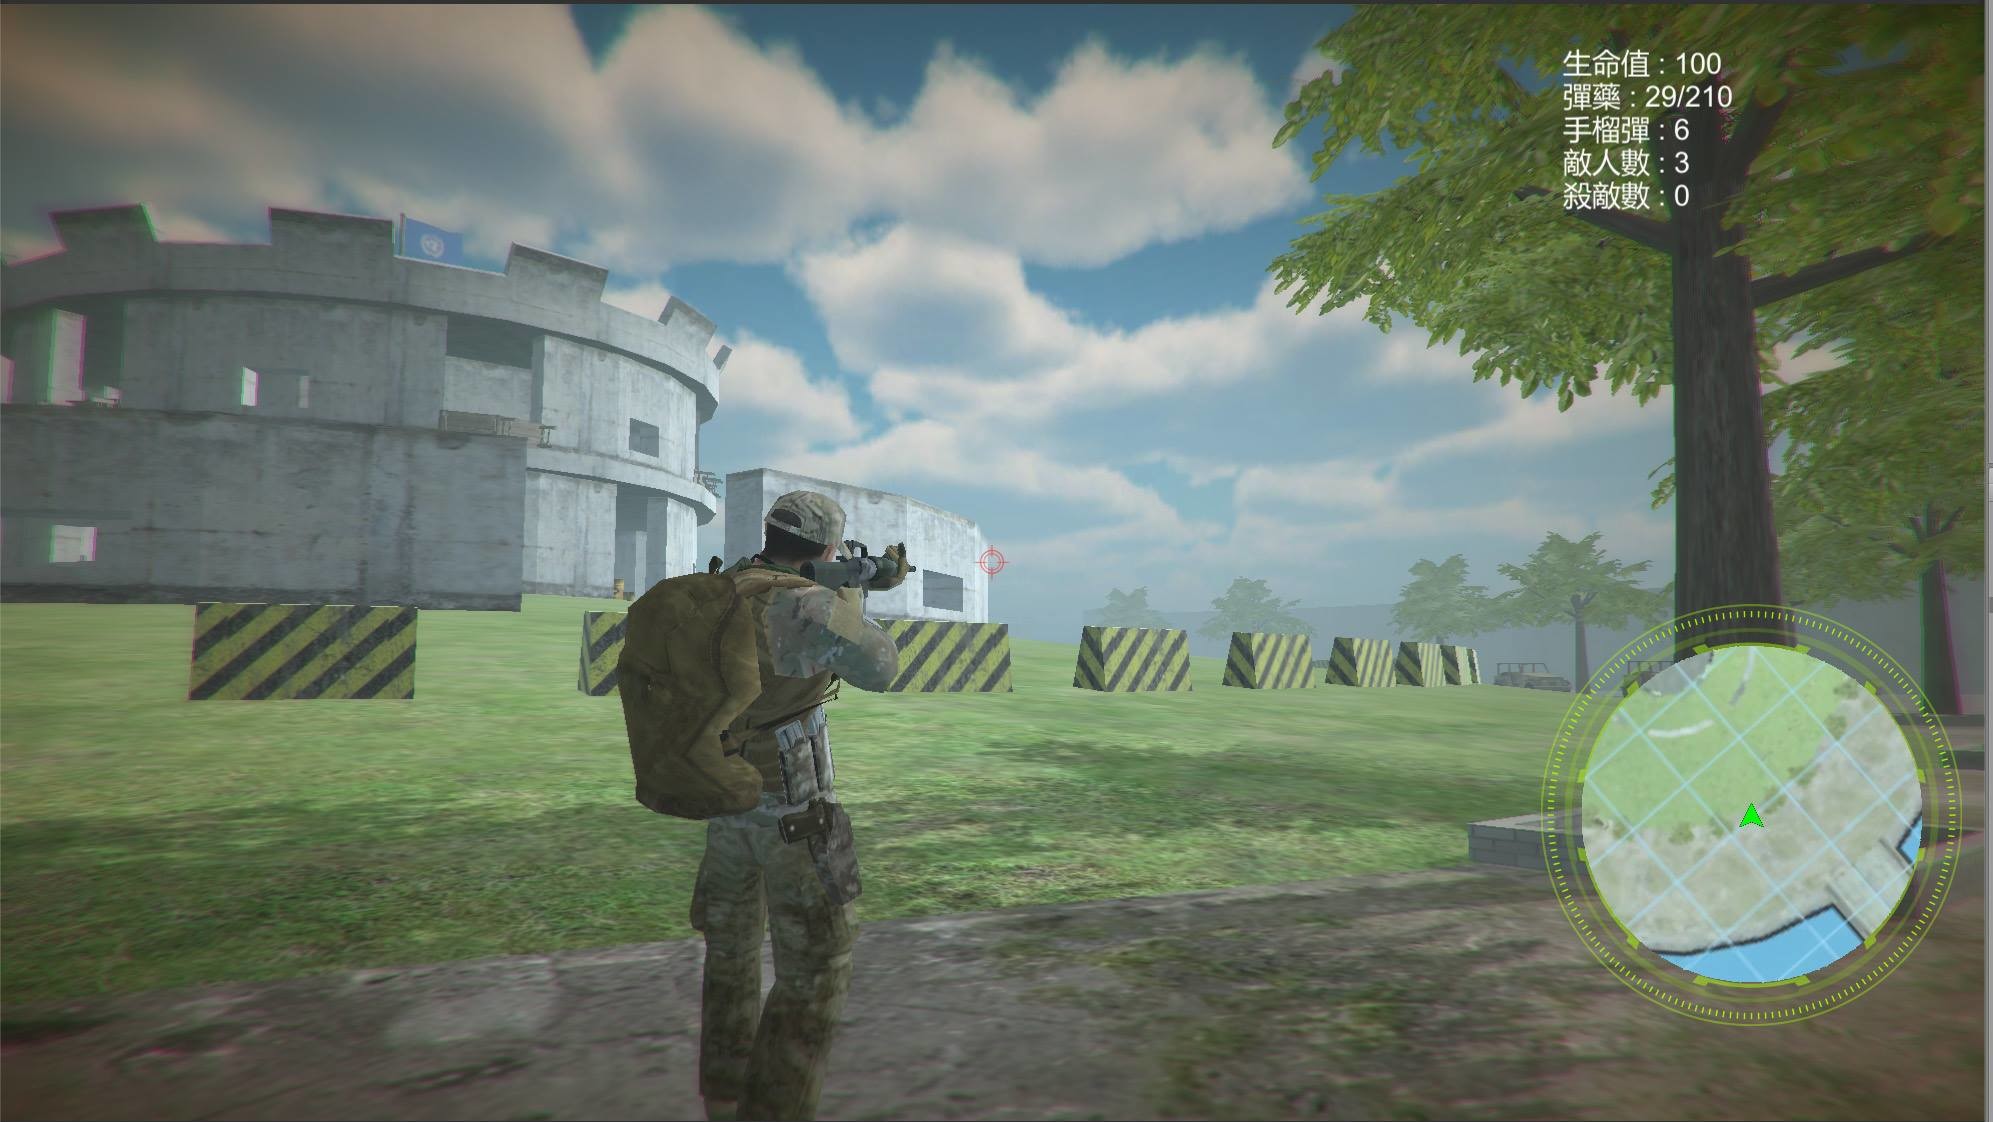 深入敵境 Behind Enemy Line screenshot